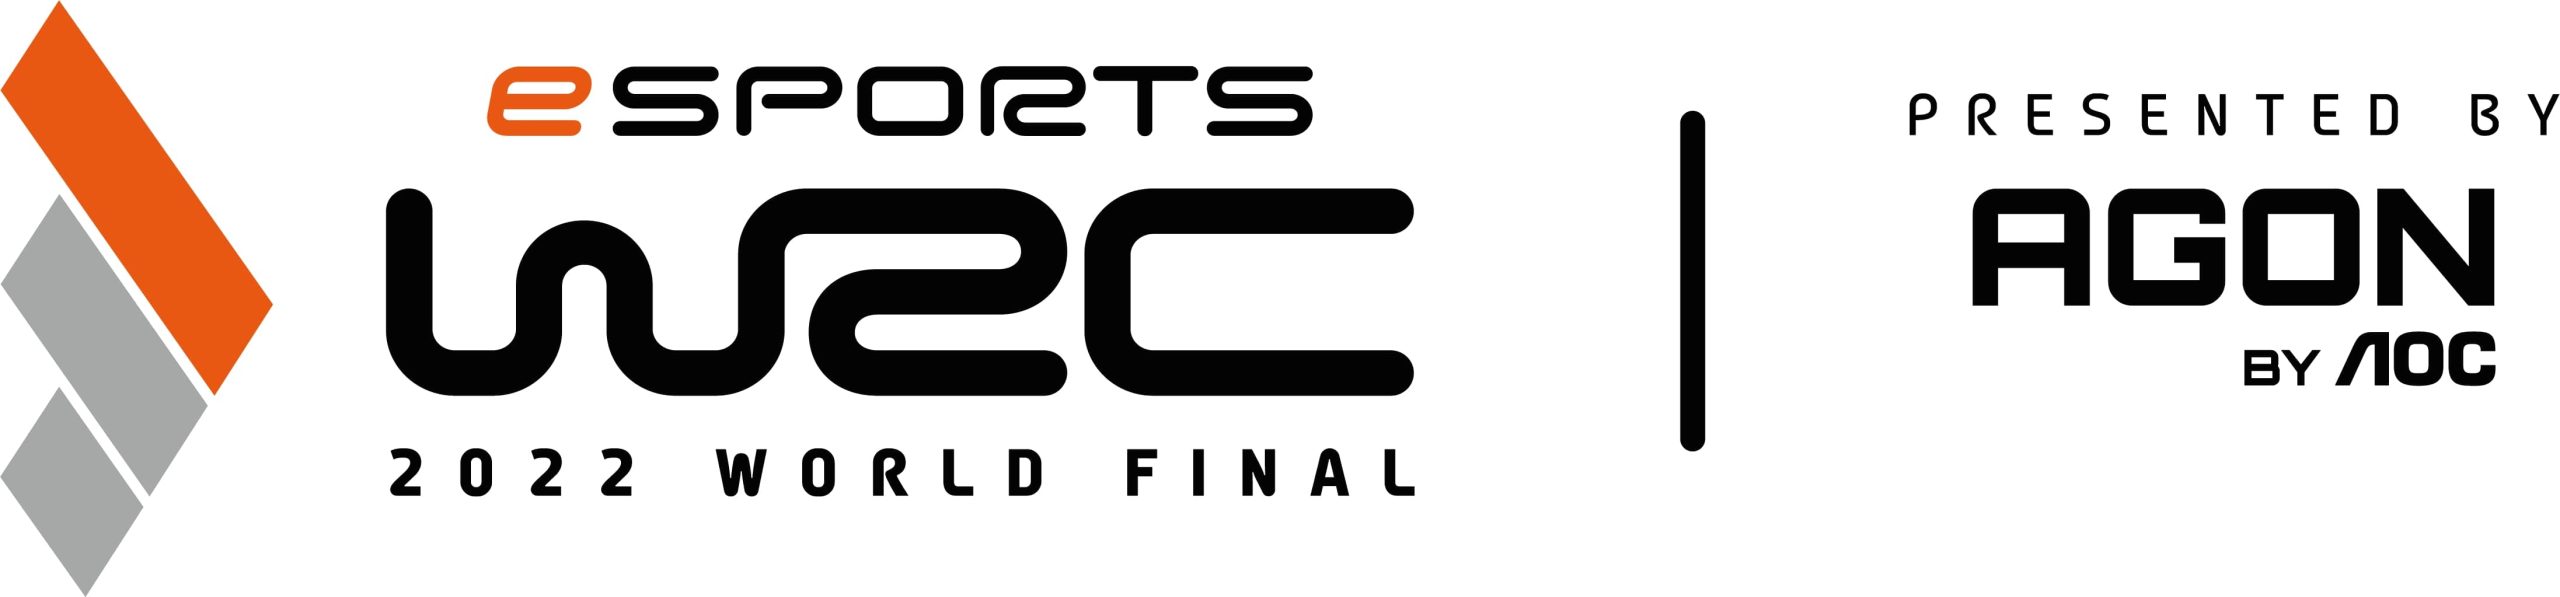 eSports WRC World Final presentata da AGON by AOC: la finale si svolgerà a settembre ad Atene